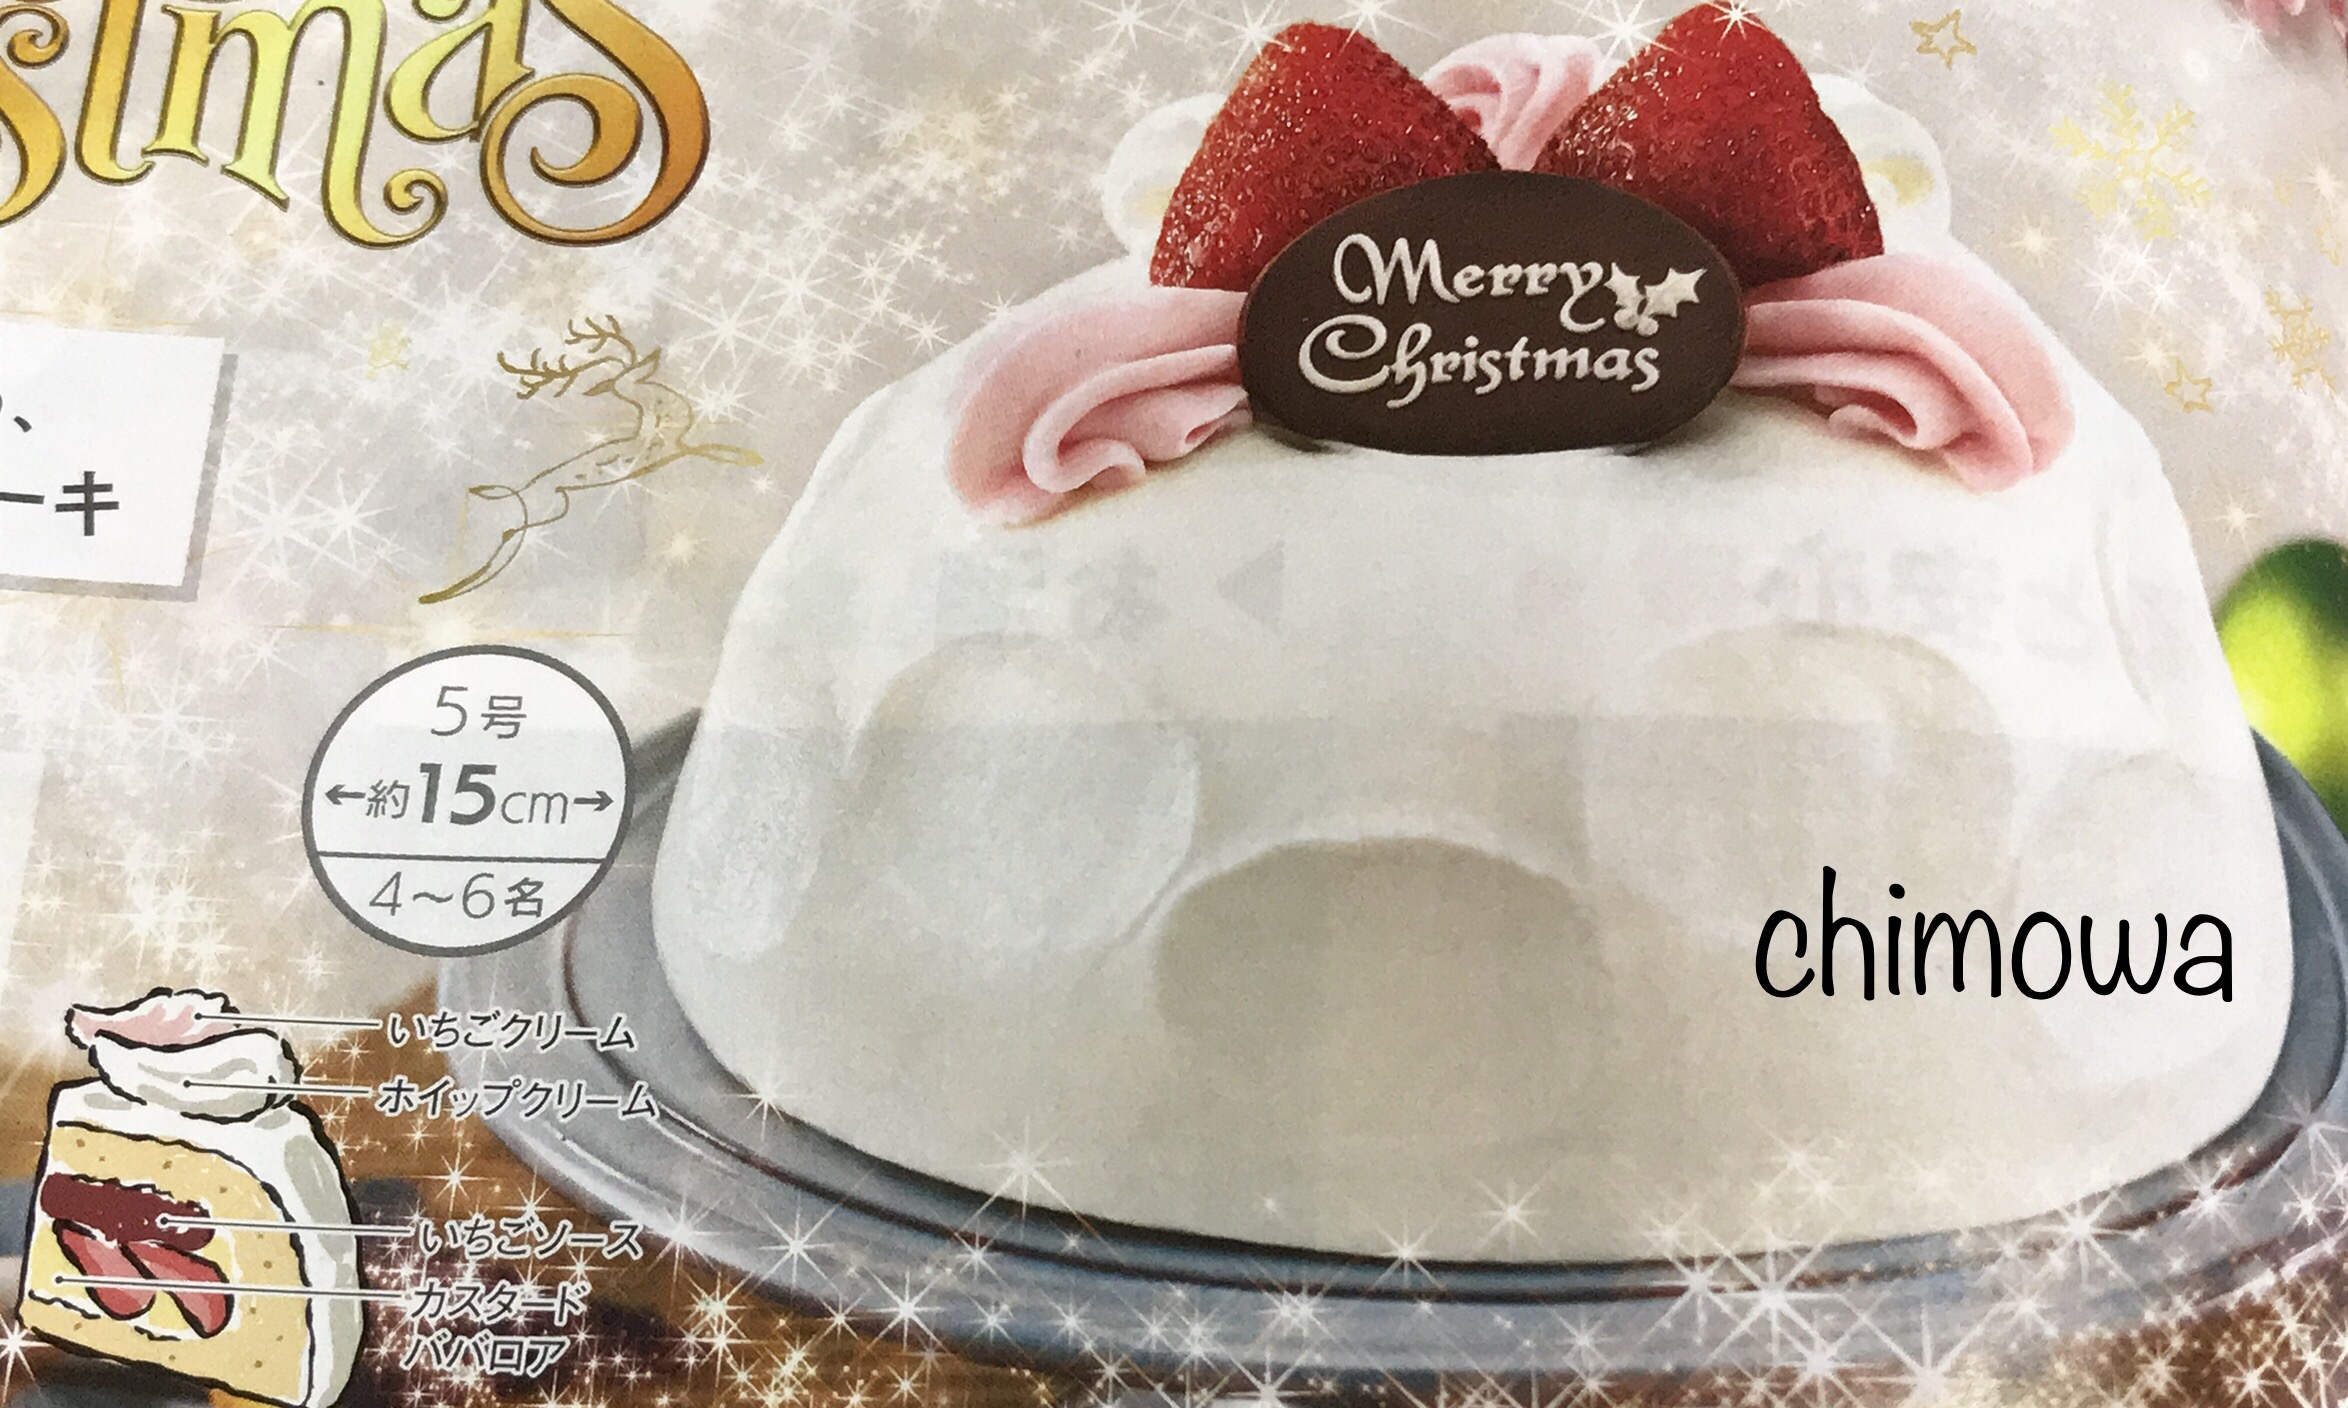 クリスマスメニューが家に届く イトーヨーカドーネットスーパー 神奈川県の食材宅配検索 かな食ネット